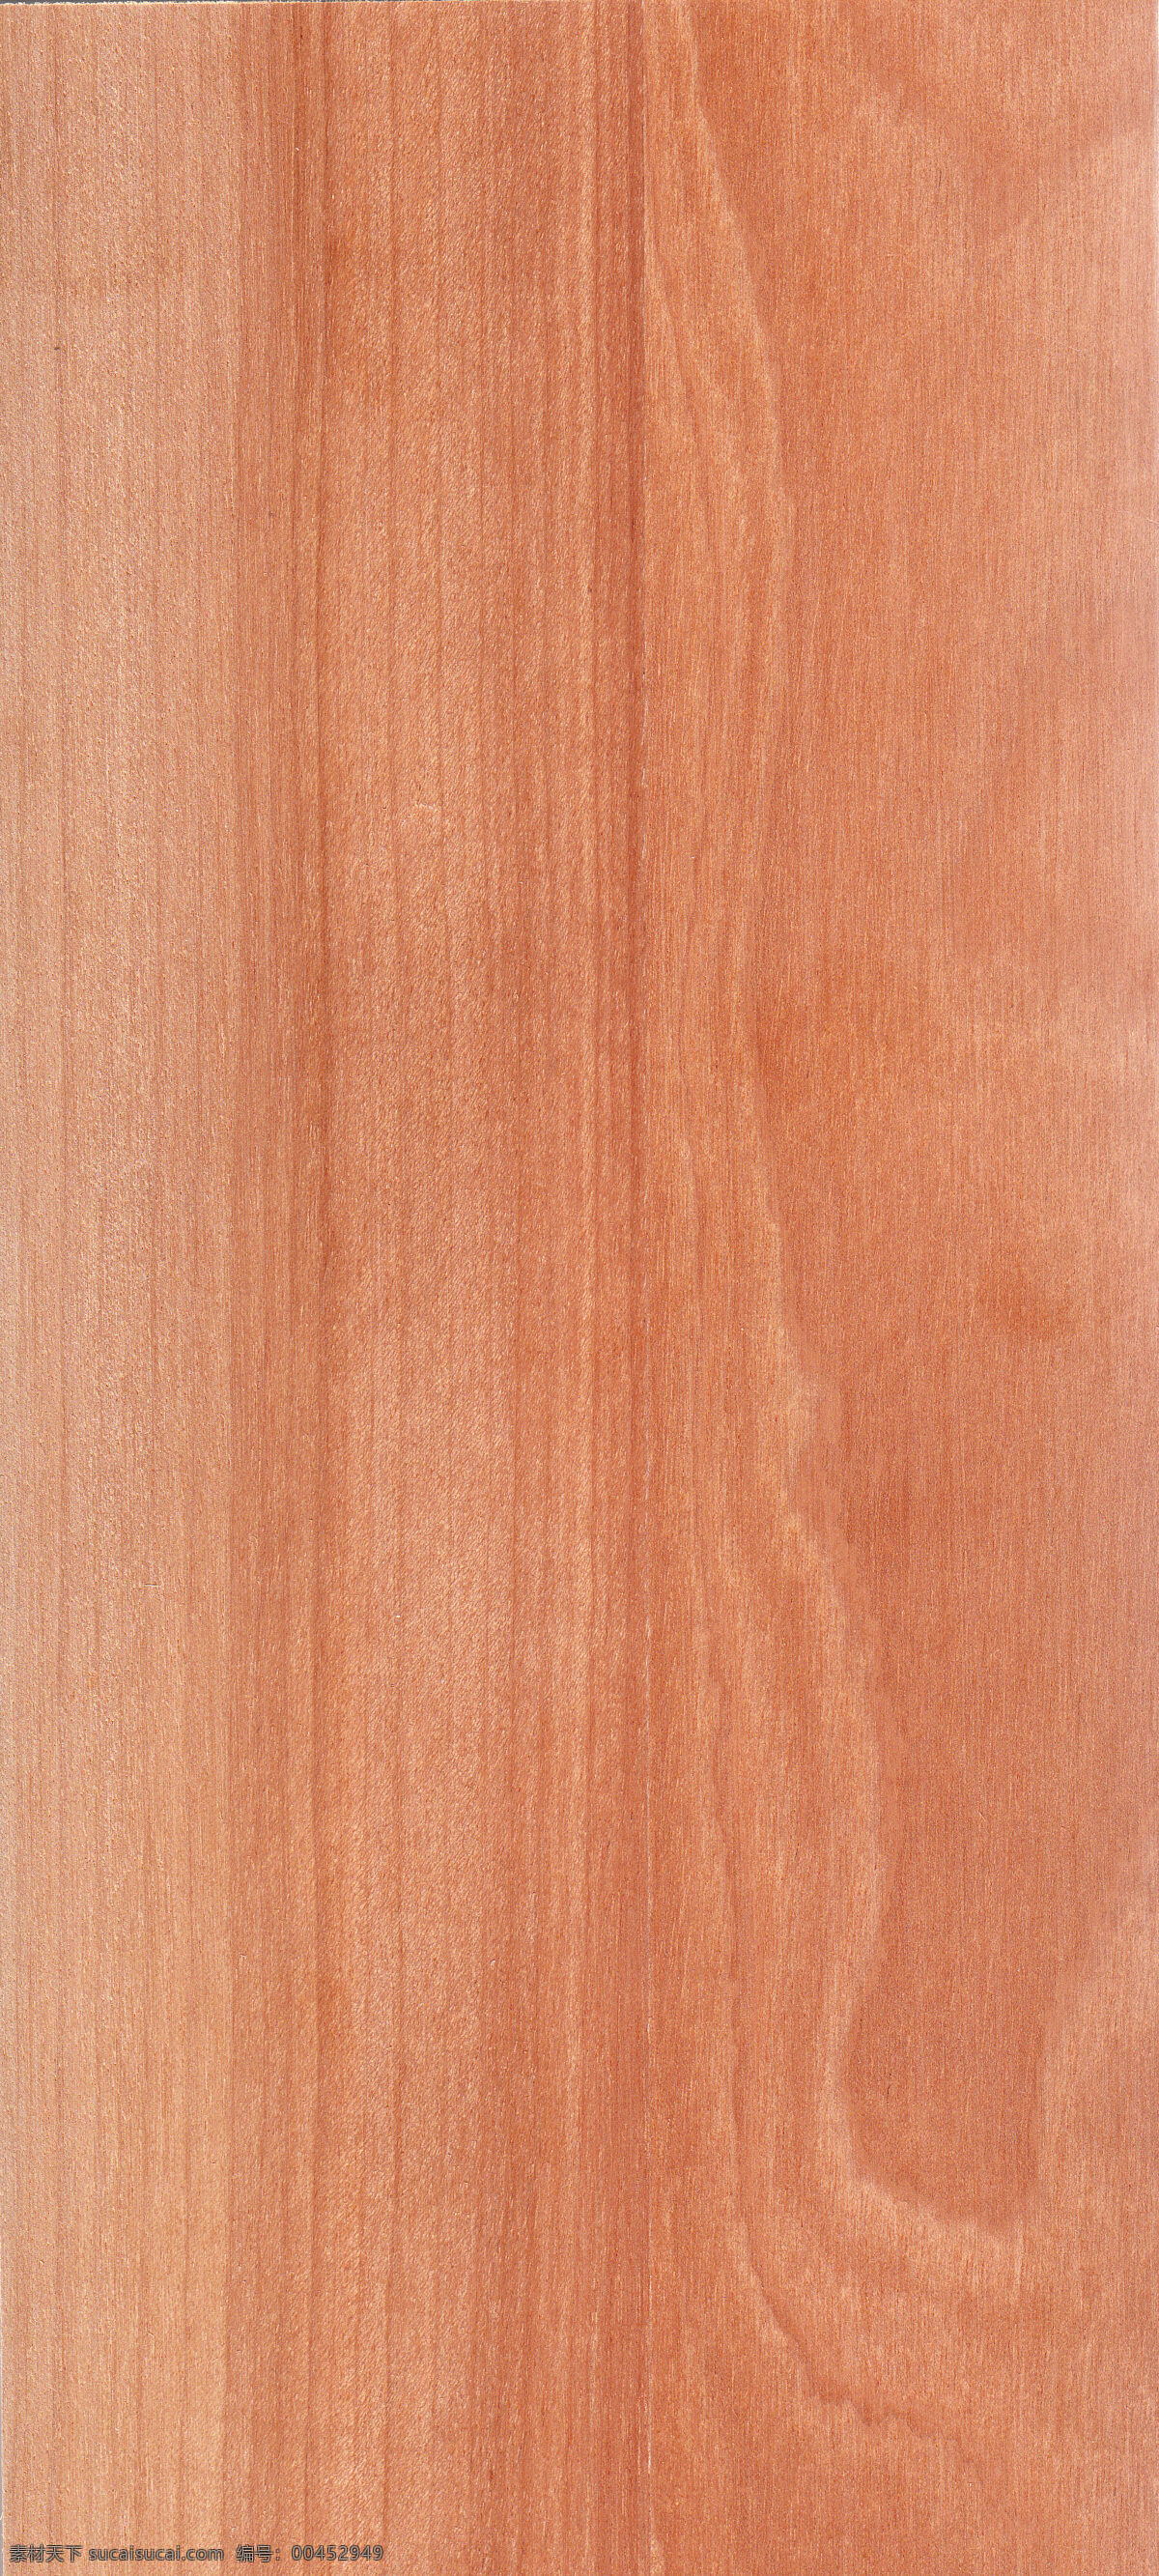 樱桃木 木纹 清晰 木纹贴图 其他素材 底纹边框